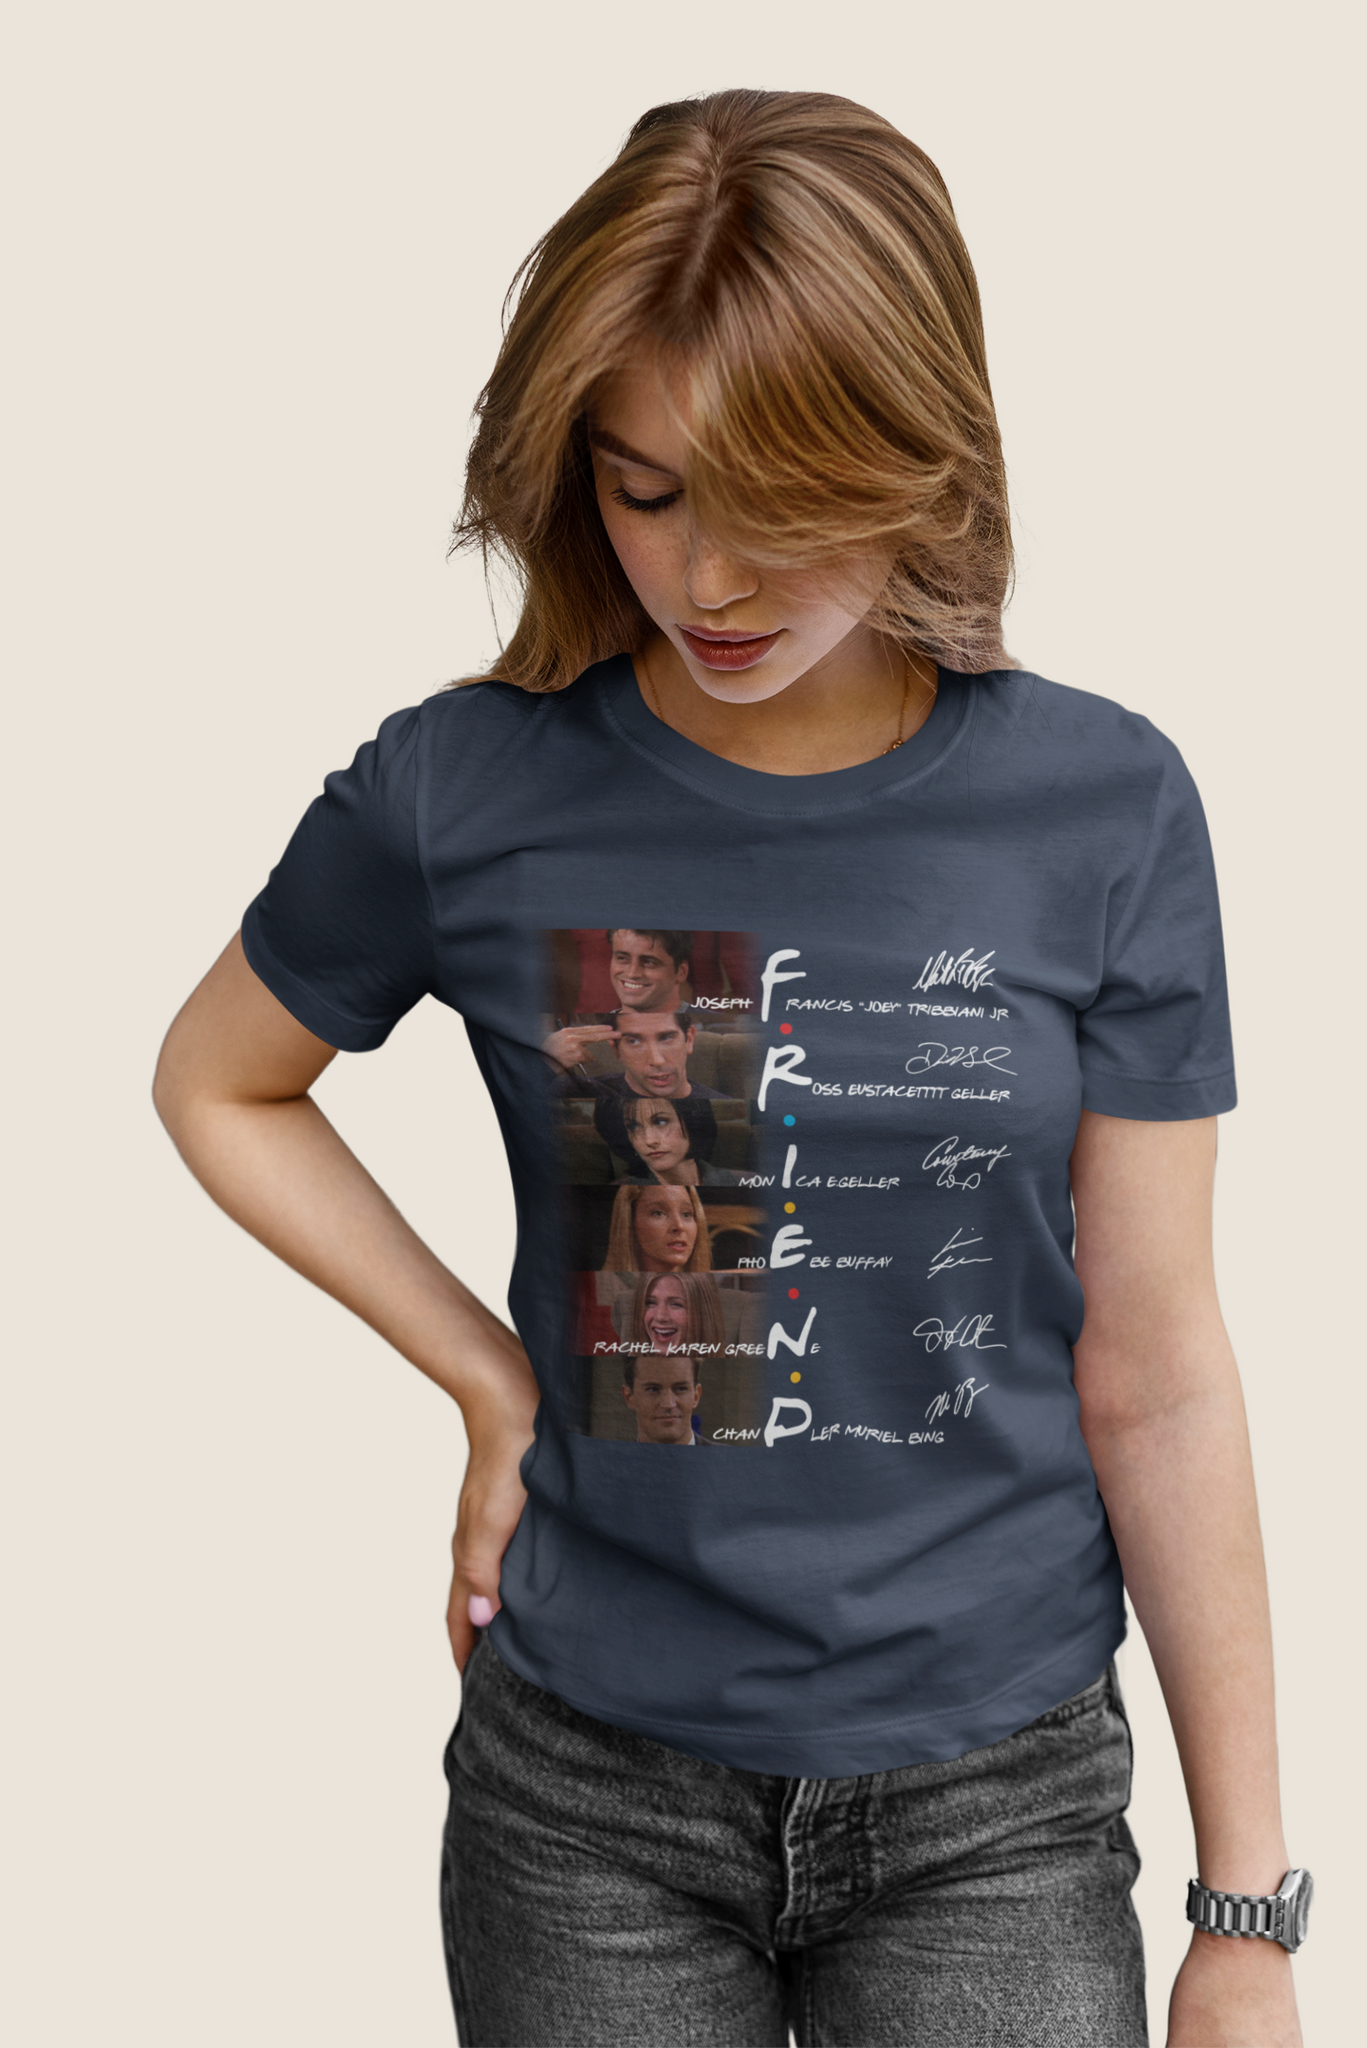 Friends TV Show T Shirt, Friends Shirt, Friends Characters Signature T Shirt